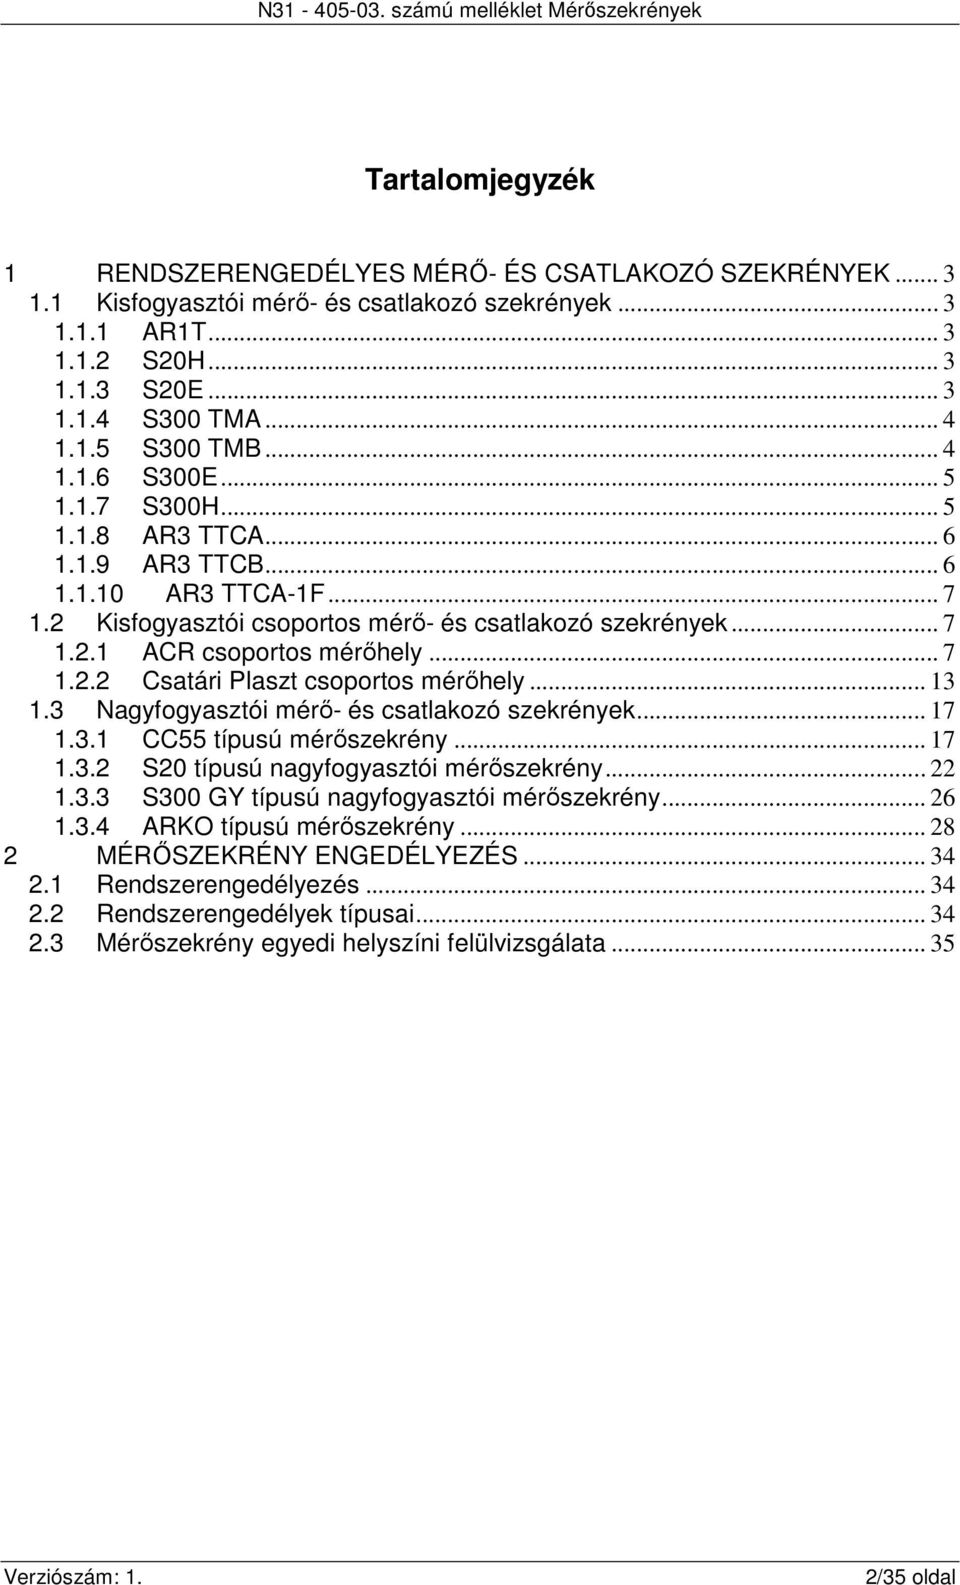 N számú melléklet Mérőszekrények - PDF Ingyenes letöltés